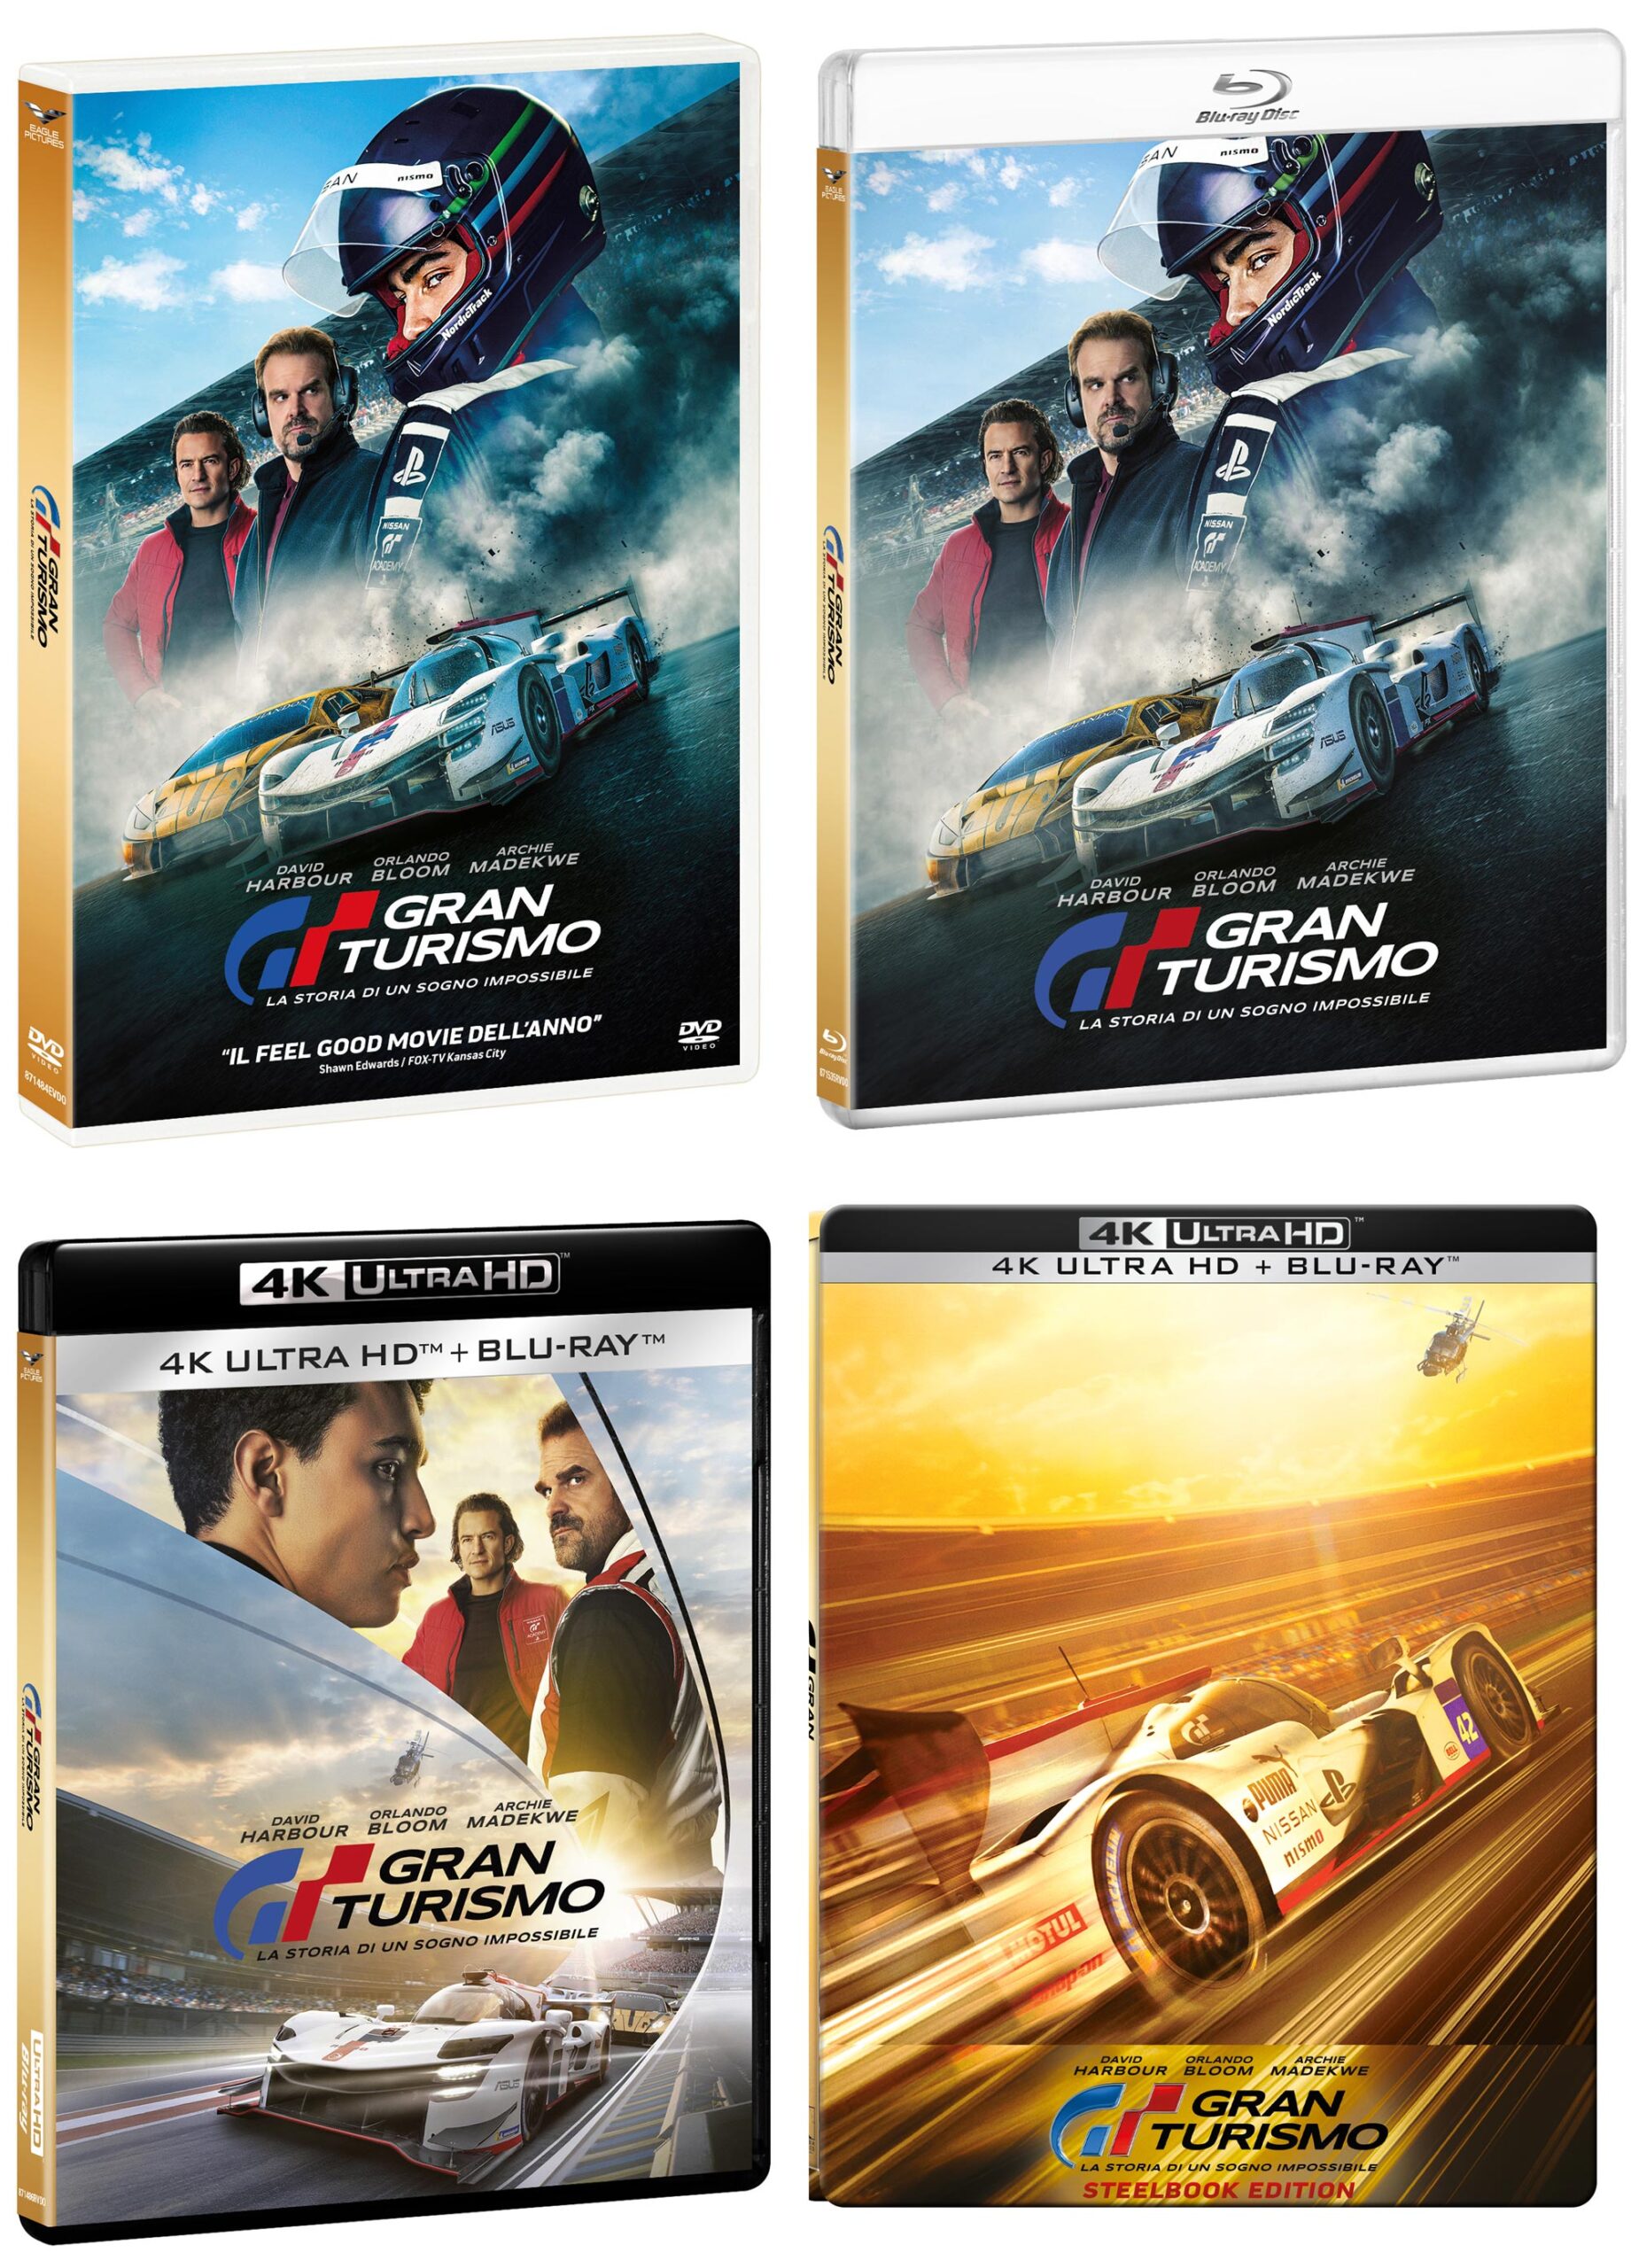 Gran Turismo La storia di un sogno impossibile in DVD, Blu-ray, 4K e Steelbook